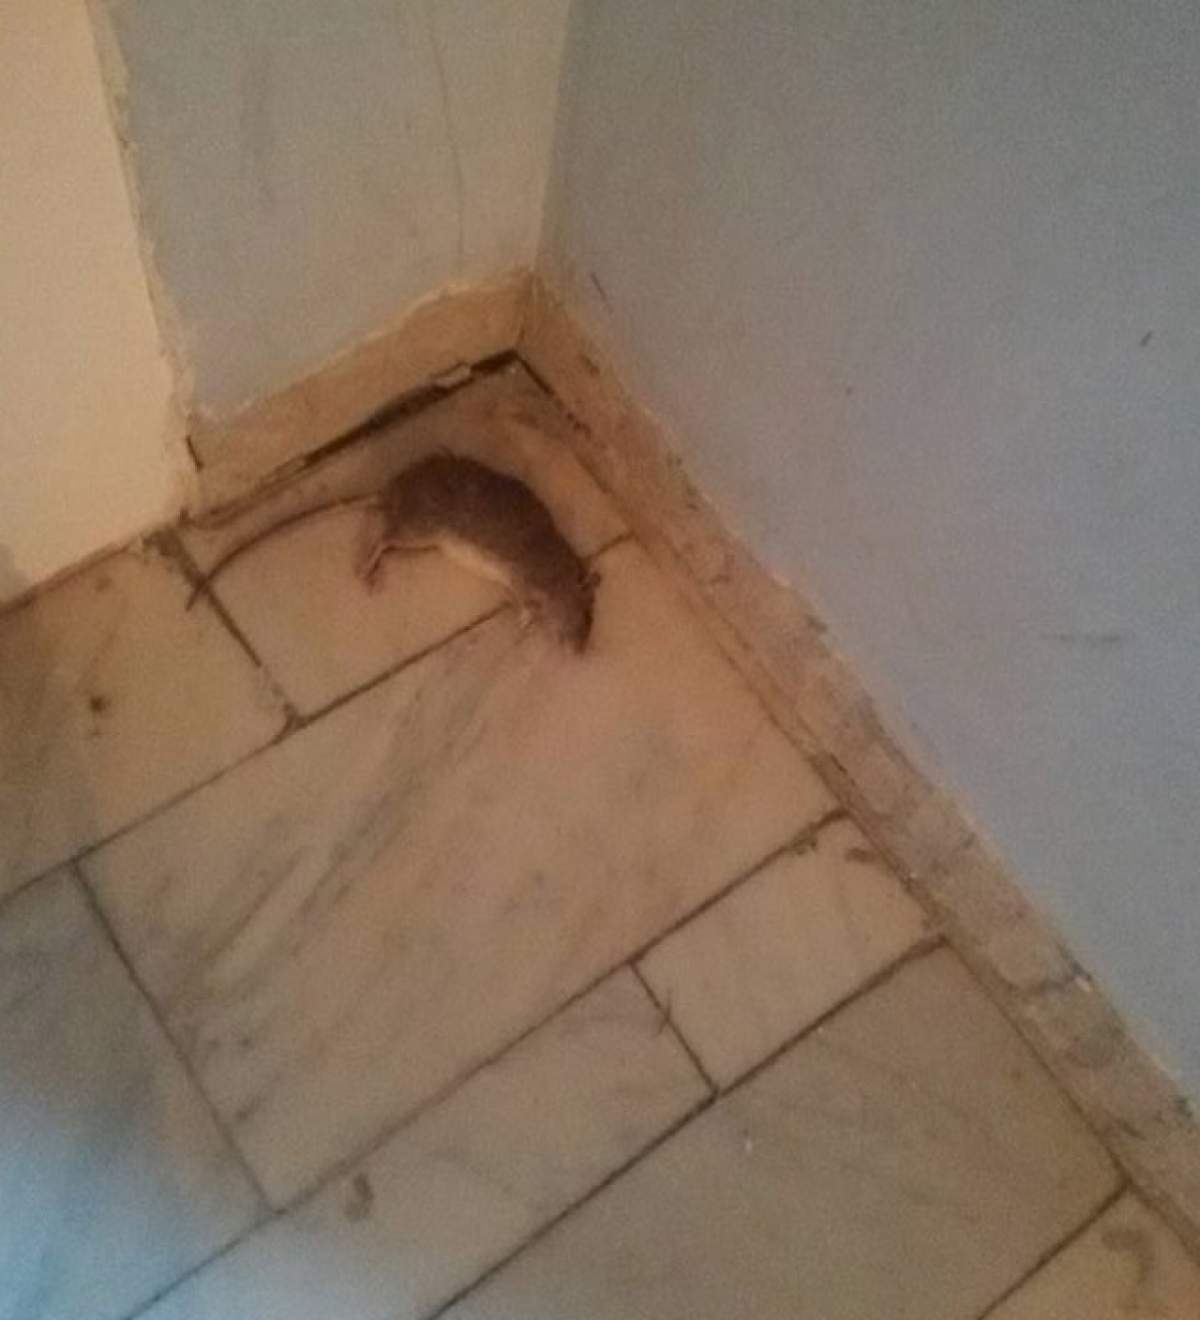 Imagini şocante. Un şobolan mort a fost fotografiat pe holul unui spital din Capitală